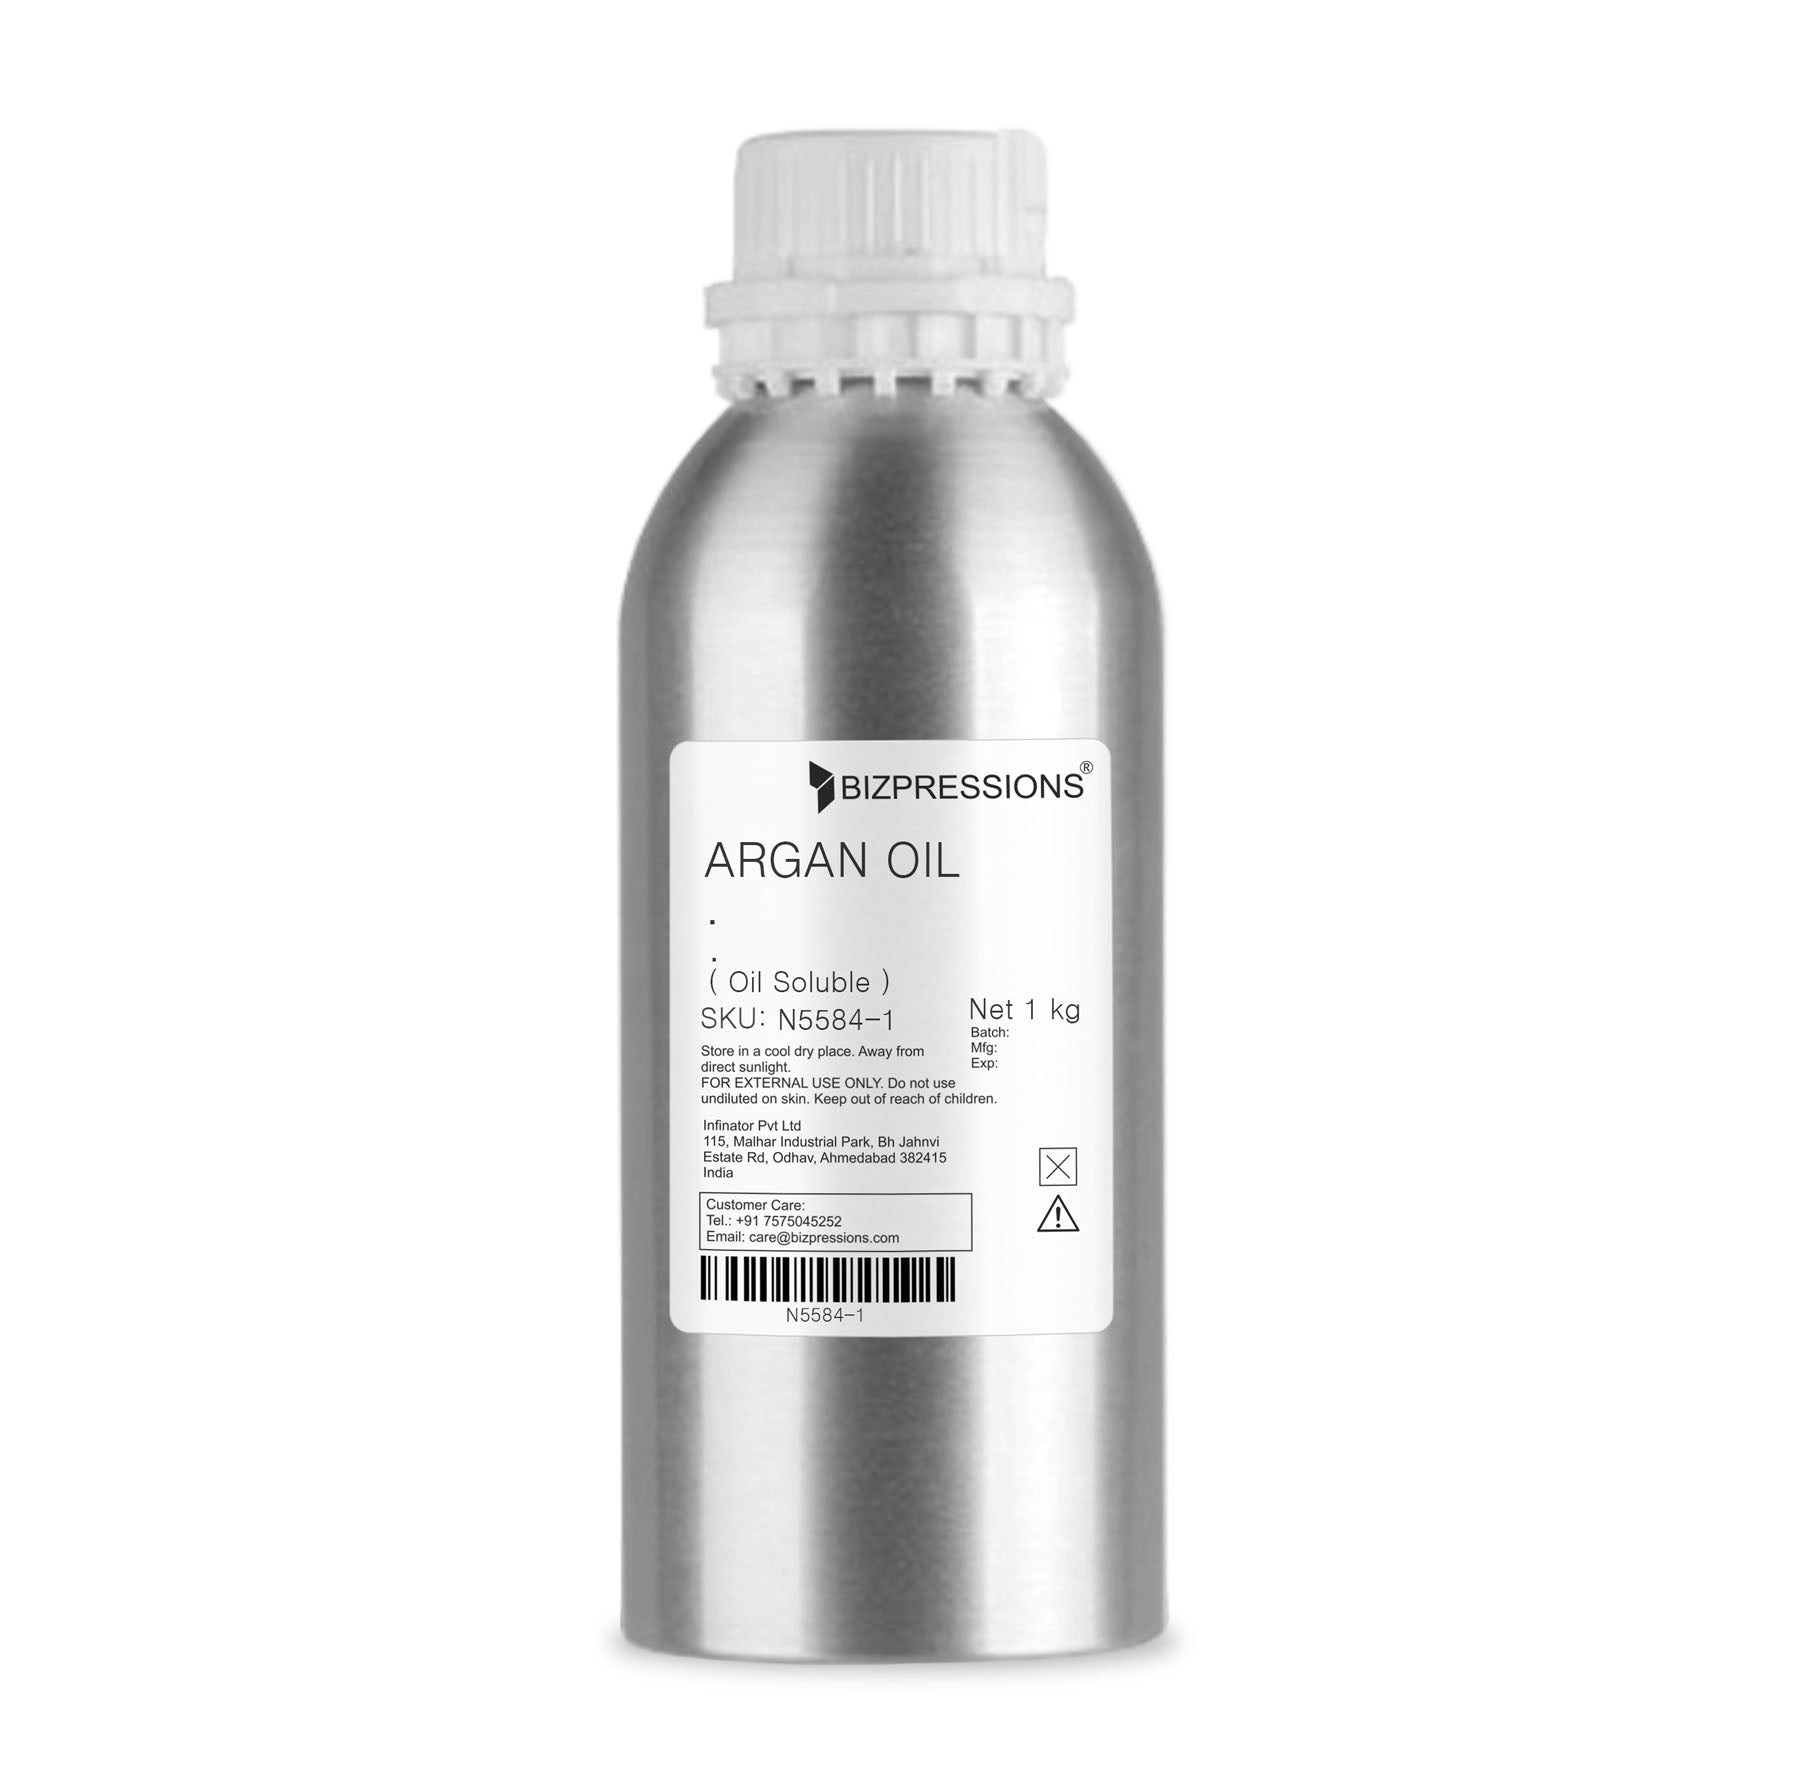 ARGAN OIL - Fragrance ( Oil Soluble ) - 1 kg